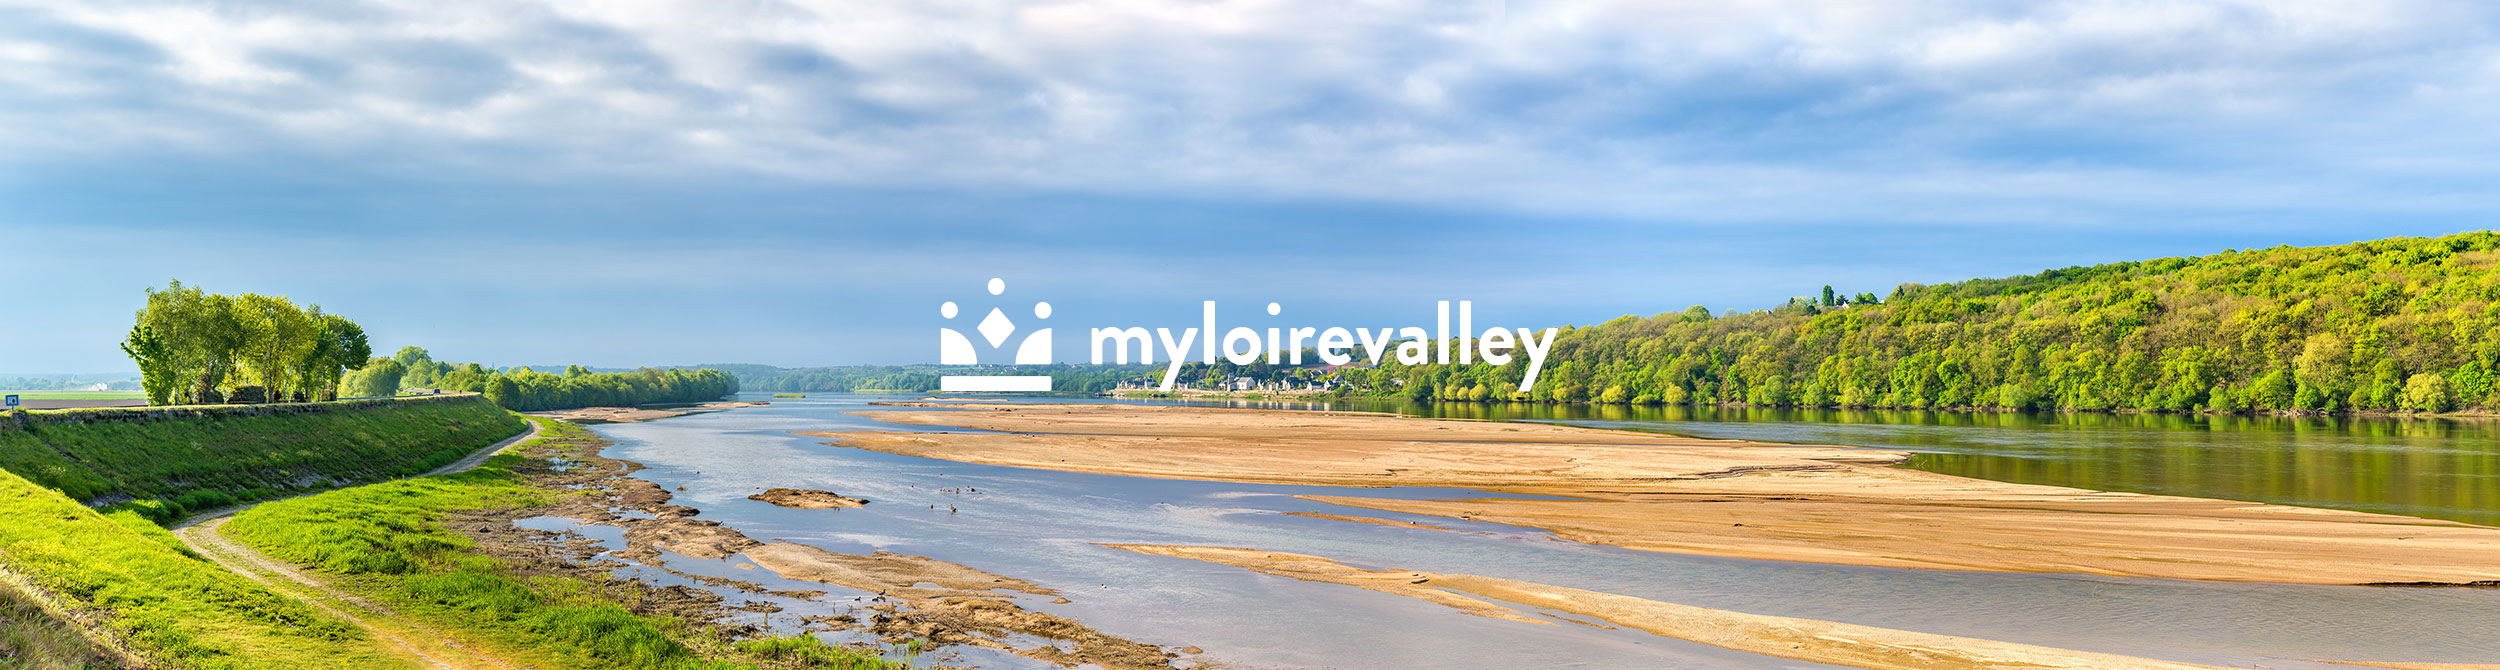 Vue de la vallée de la Loire avec logo My Loire Valley au centre.